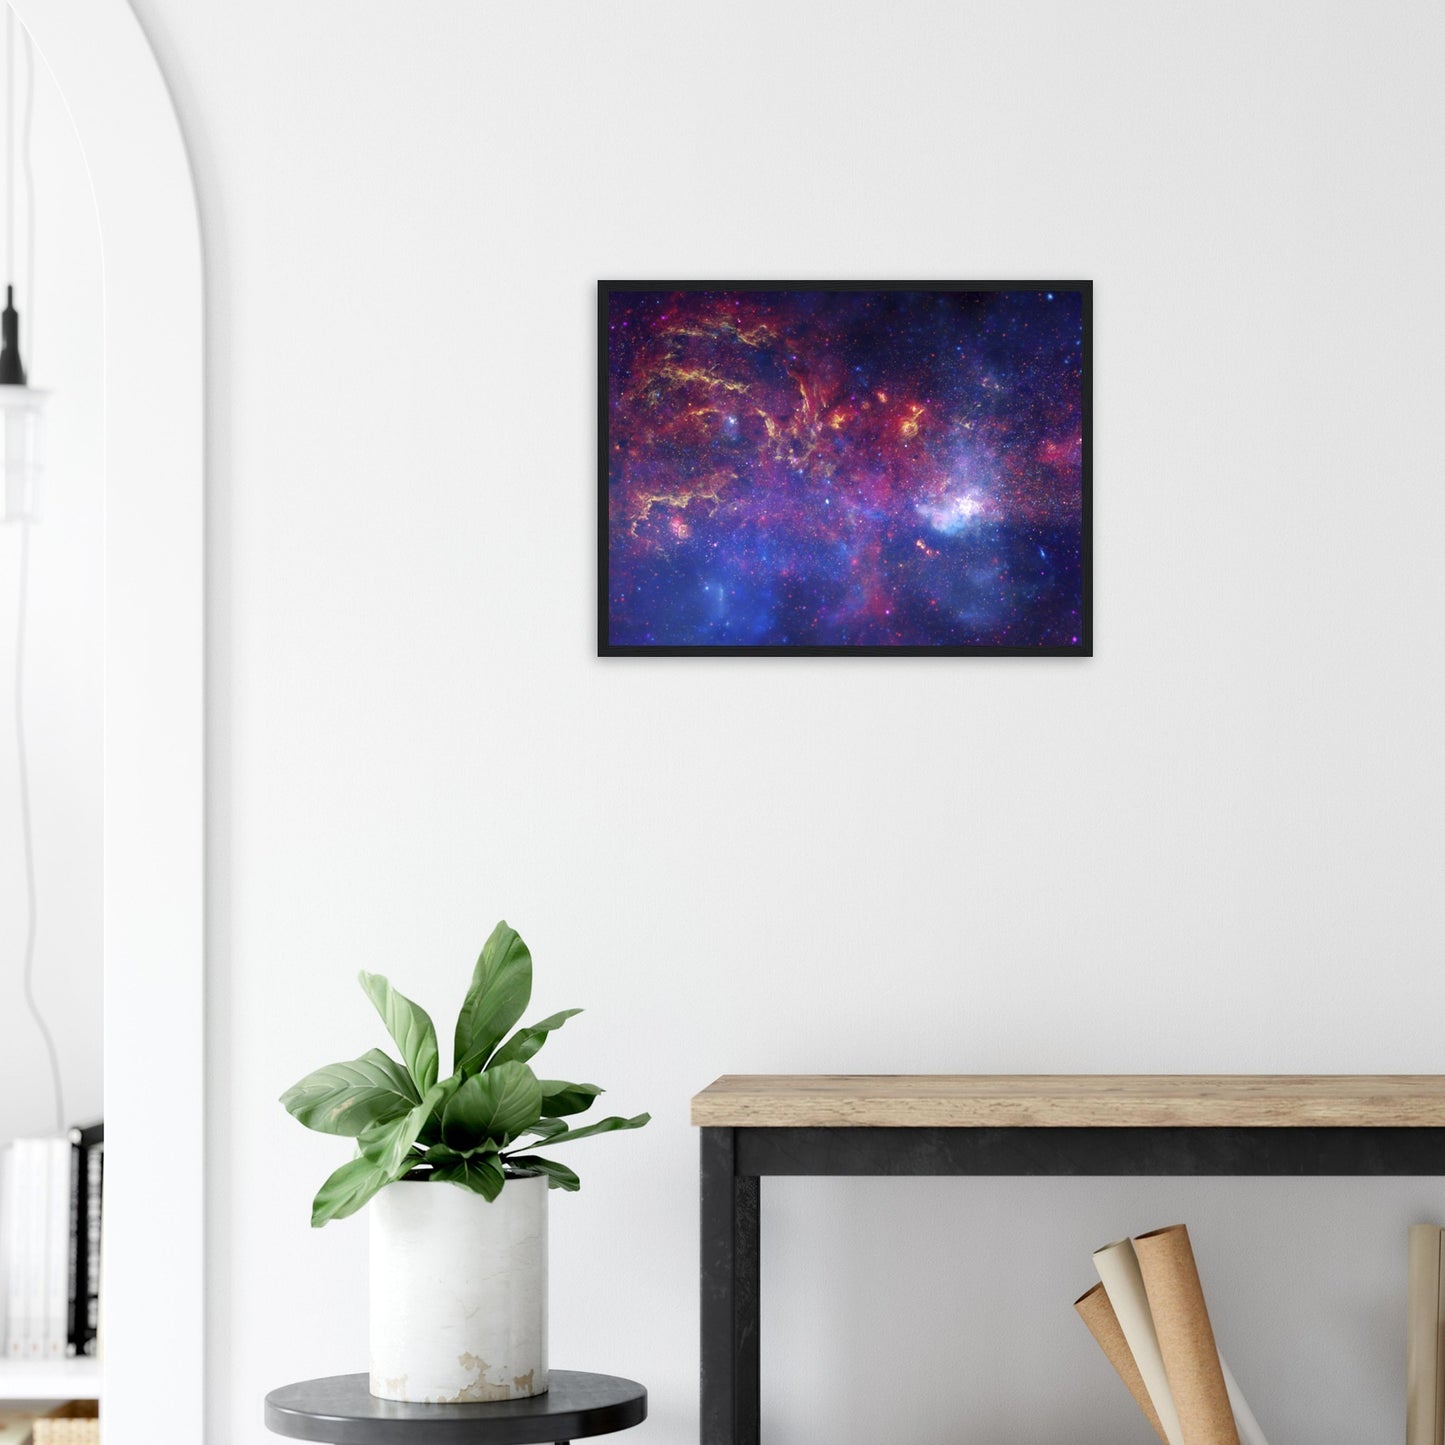 Astrofotografie Infrarotreise durch die Milchstrasse, Great Observatories' Unique Views of the Milky Way - Premium Poster